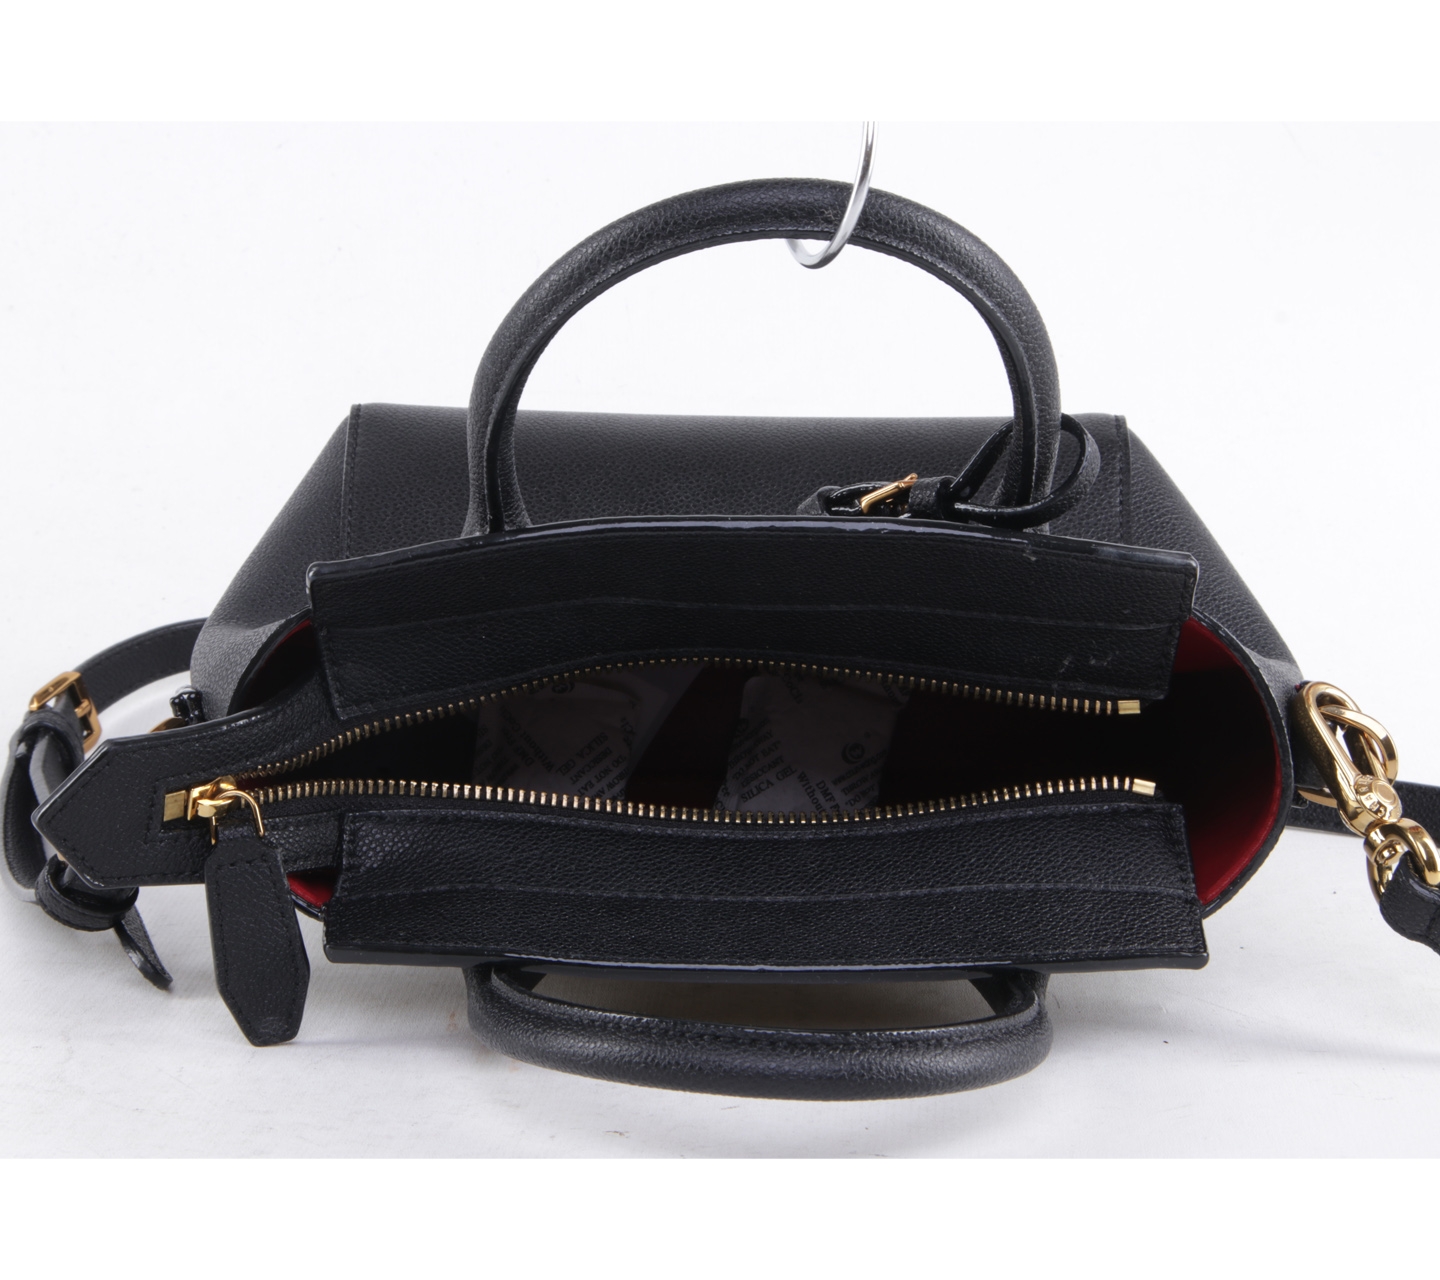 Charles&keith black satchel bag